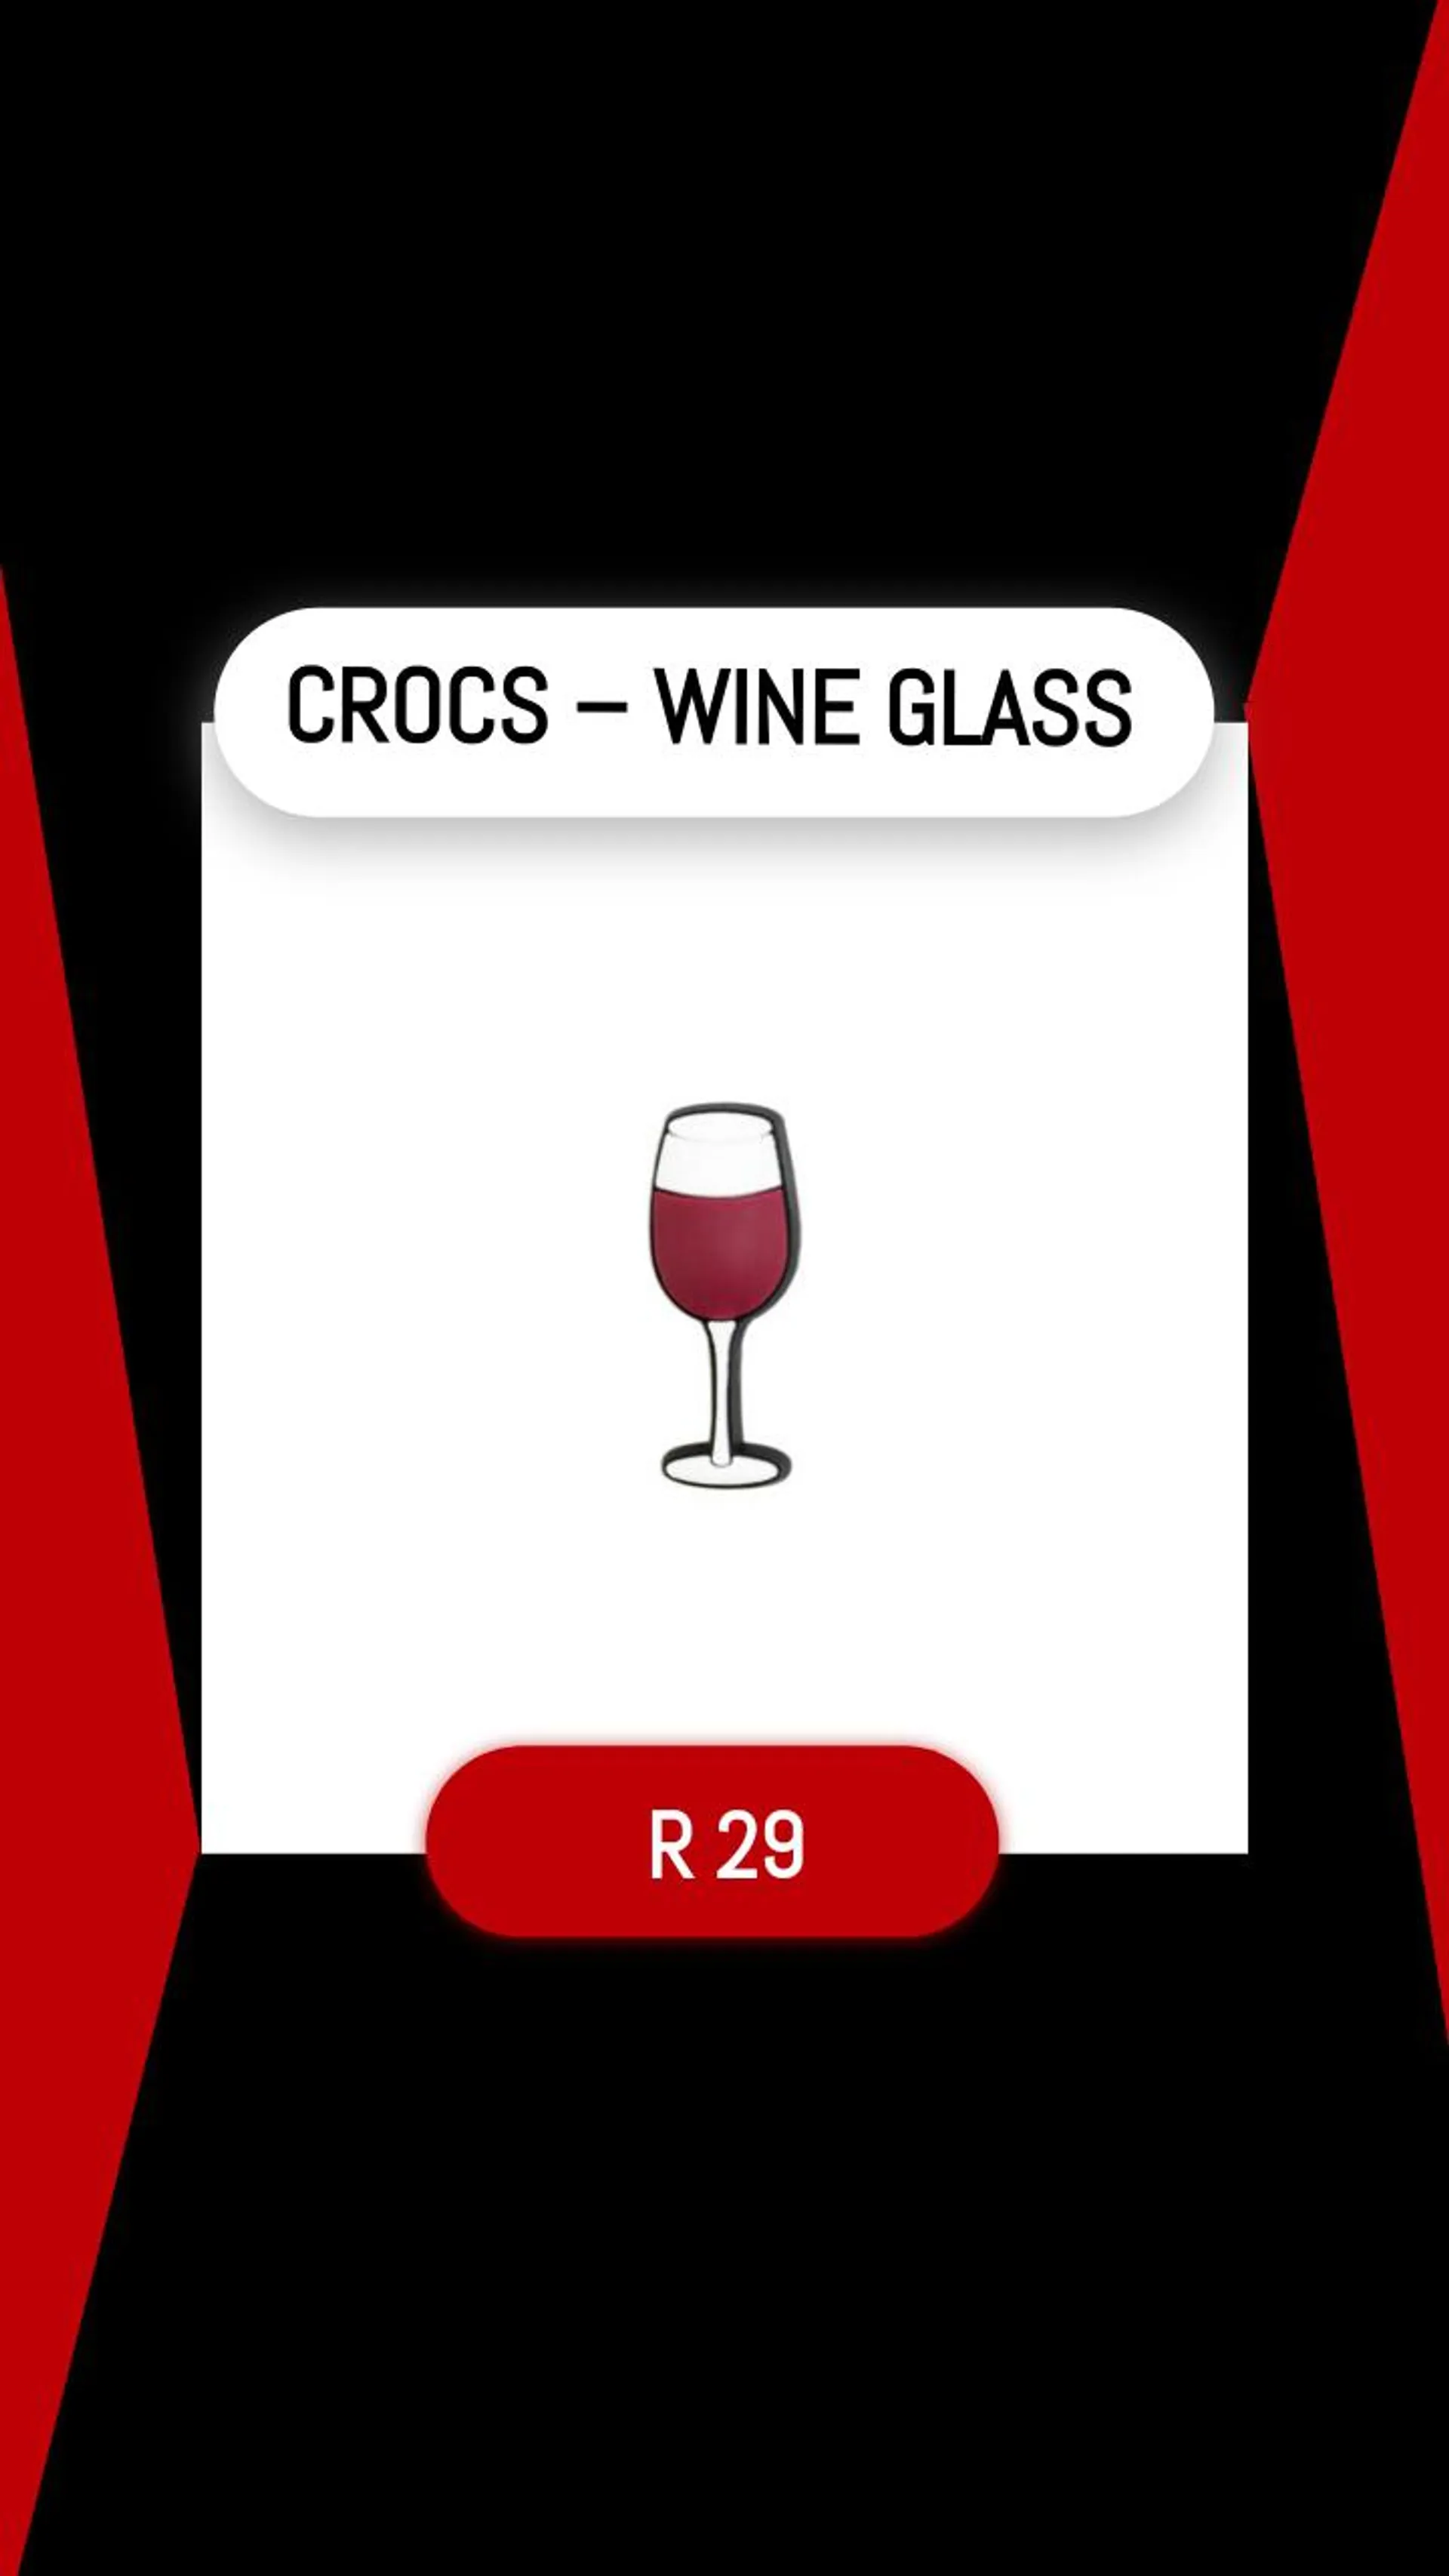 CROCS – WINE GLASS